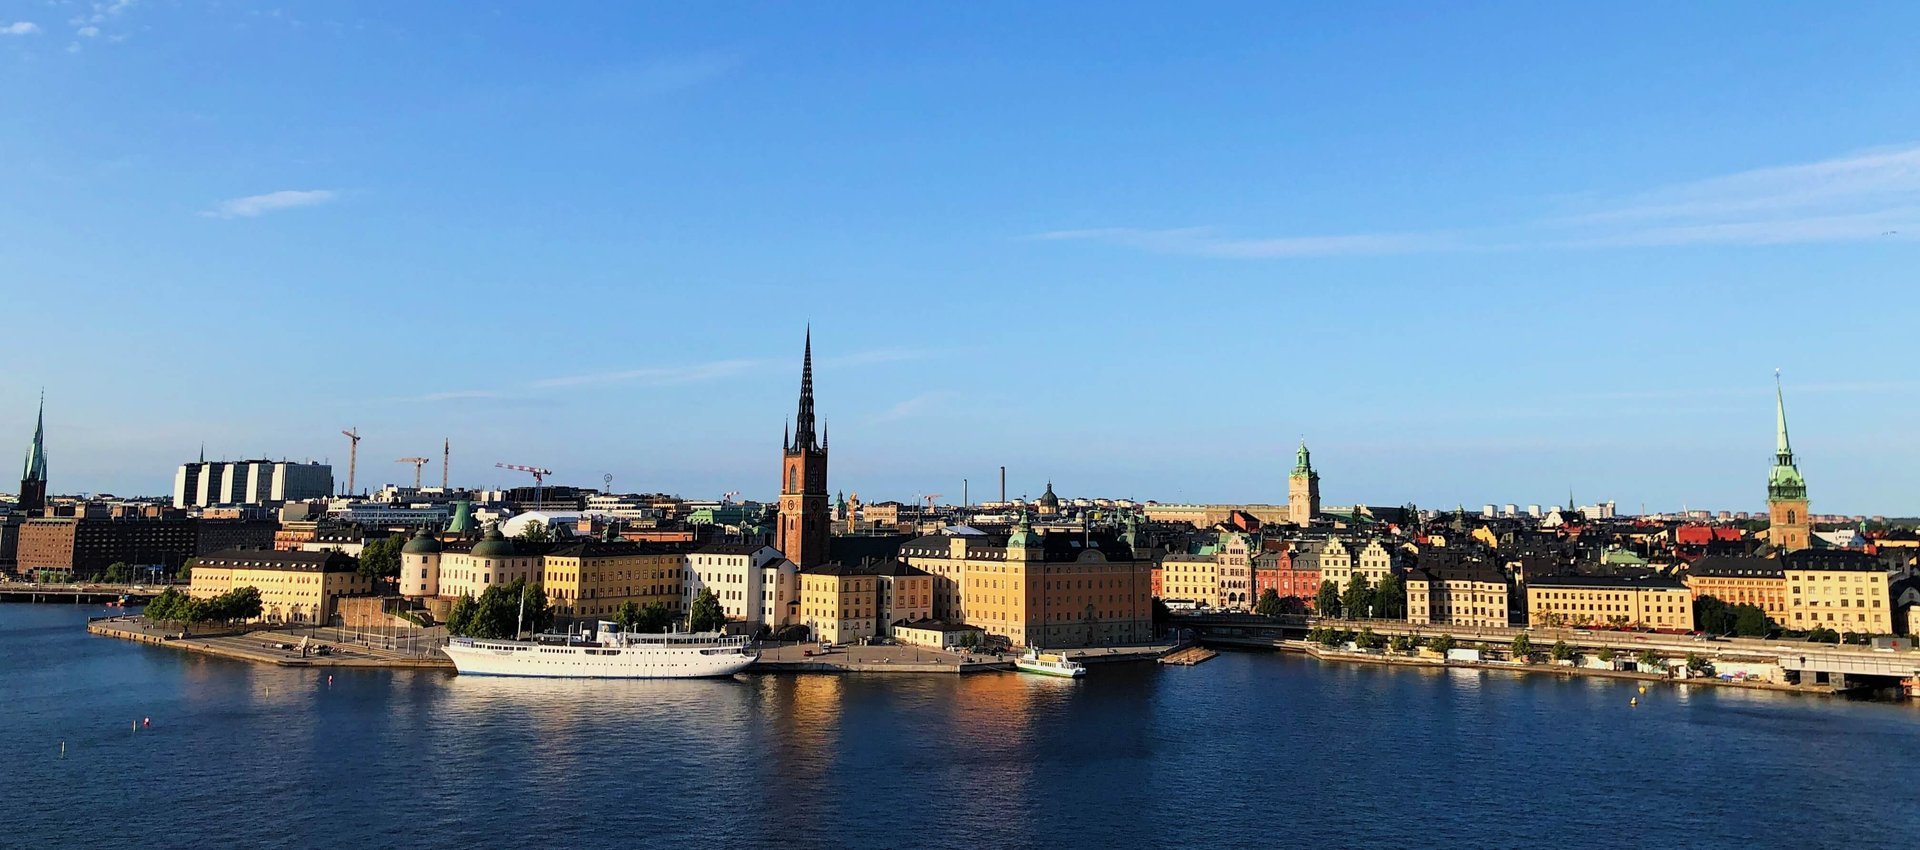 Stockholms innerstad med byggnader intill vattnet.